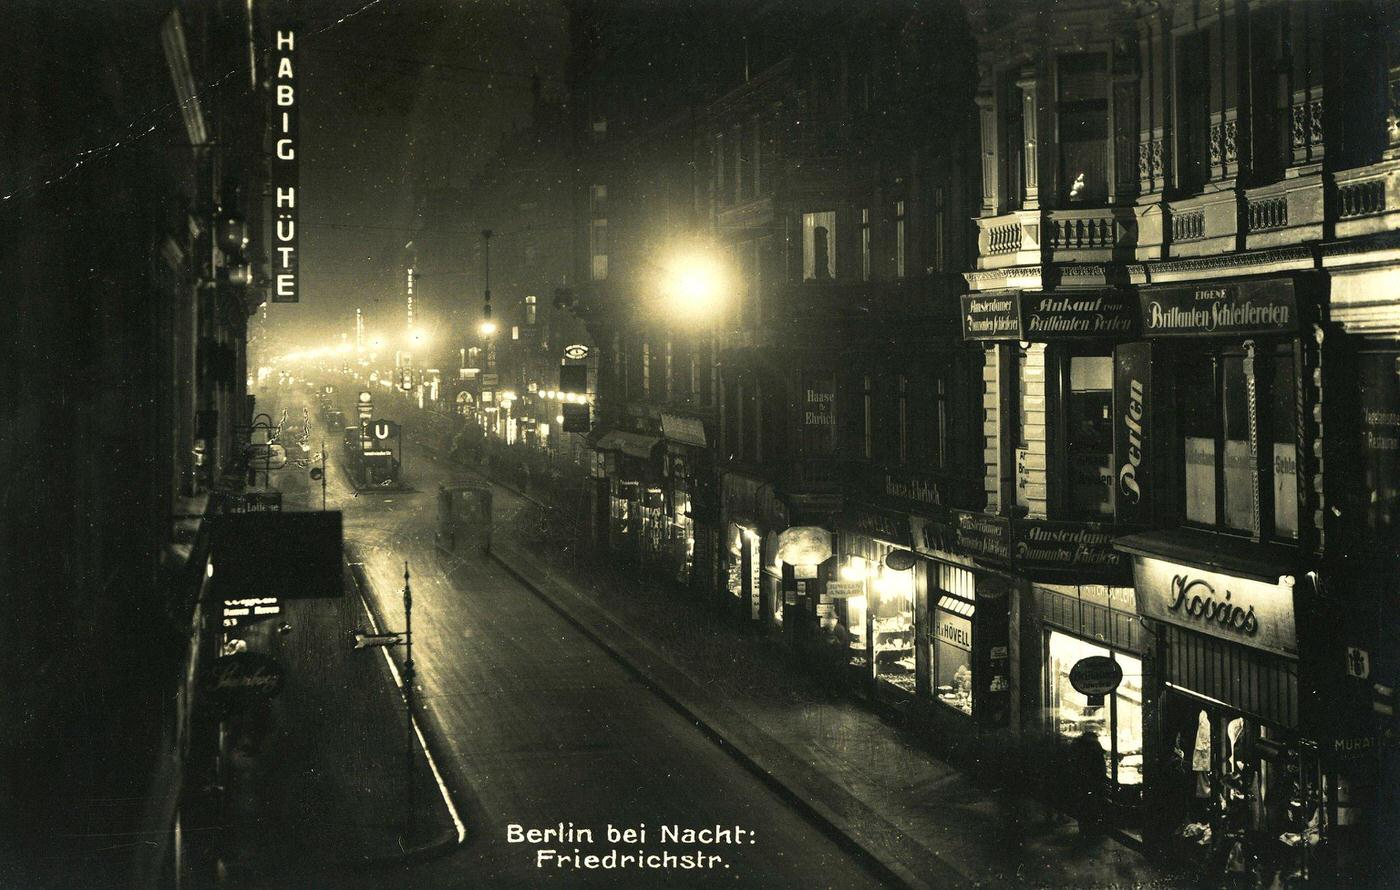 Berlin by night, Berlin, 1930s